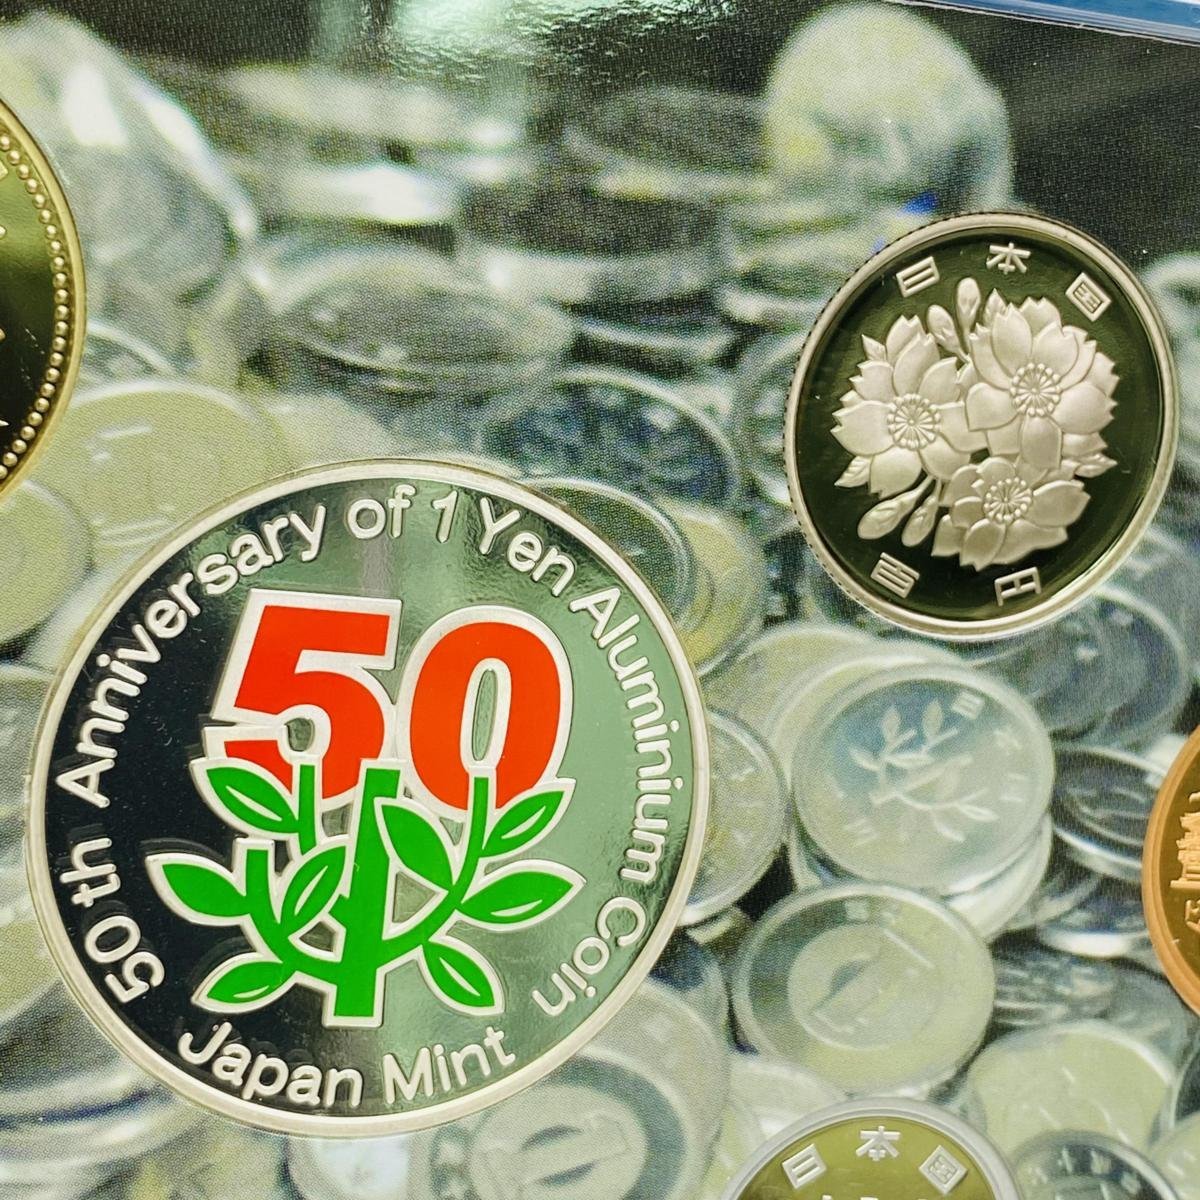 2005年(平成17年) 1円アルミニウム貨幣誕生50周年 記念 プルーフ 貨幣セット 額面合計666円 銀約20g 美品 硬貨未使用 造幣局 同梱可_画像3